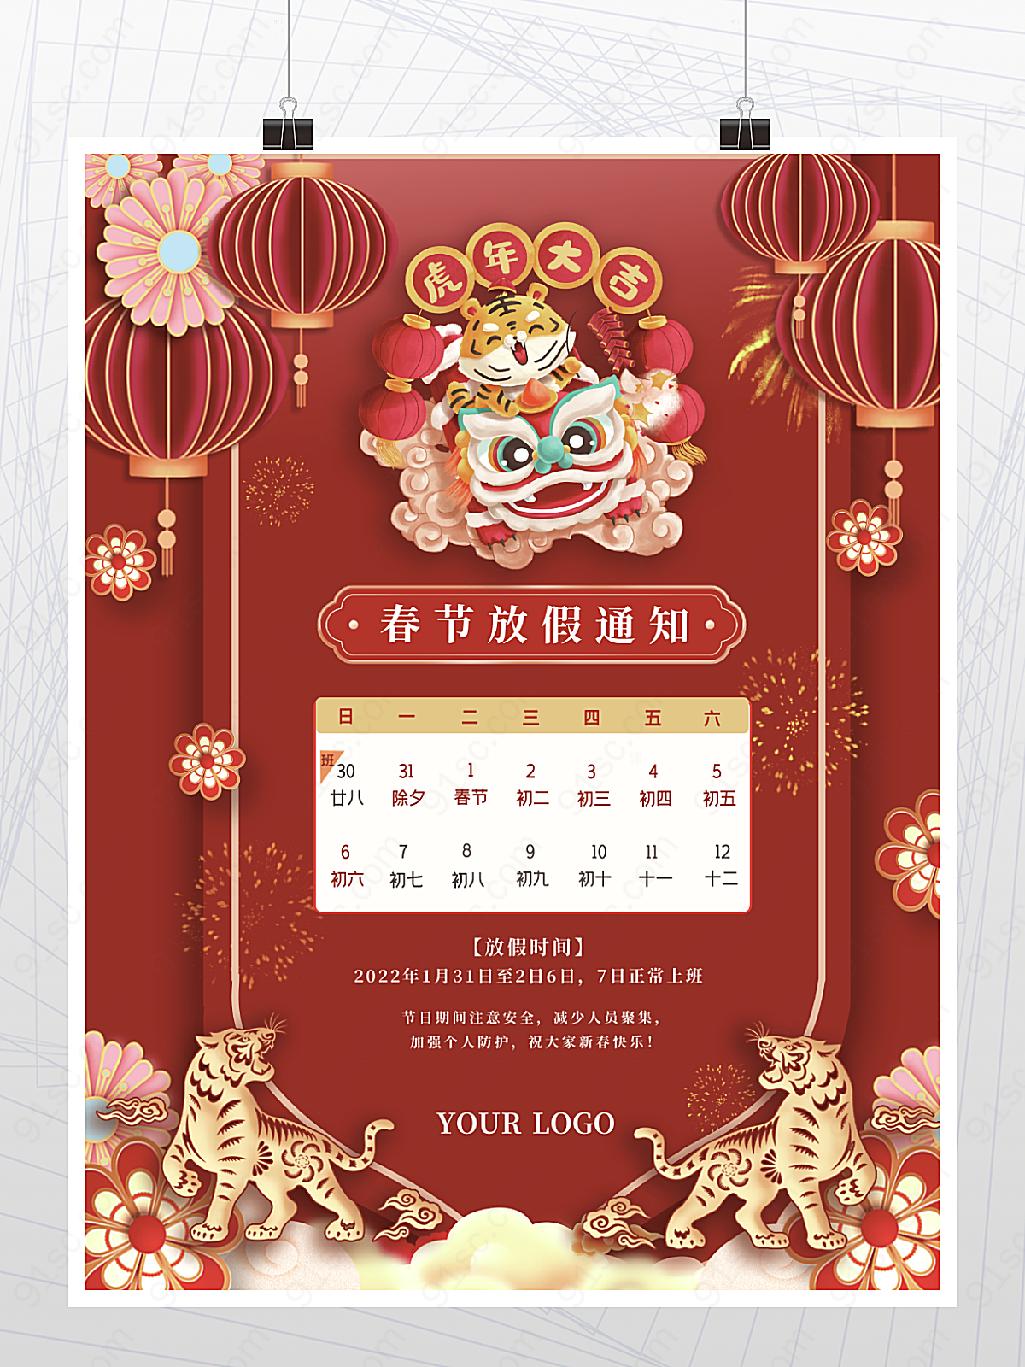 虎年新年春节放假通知海报